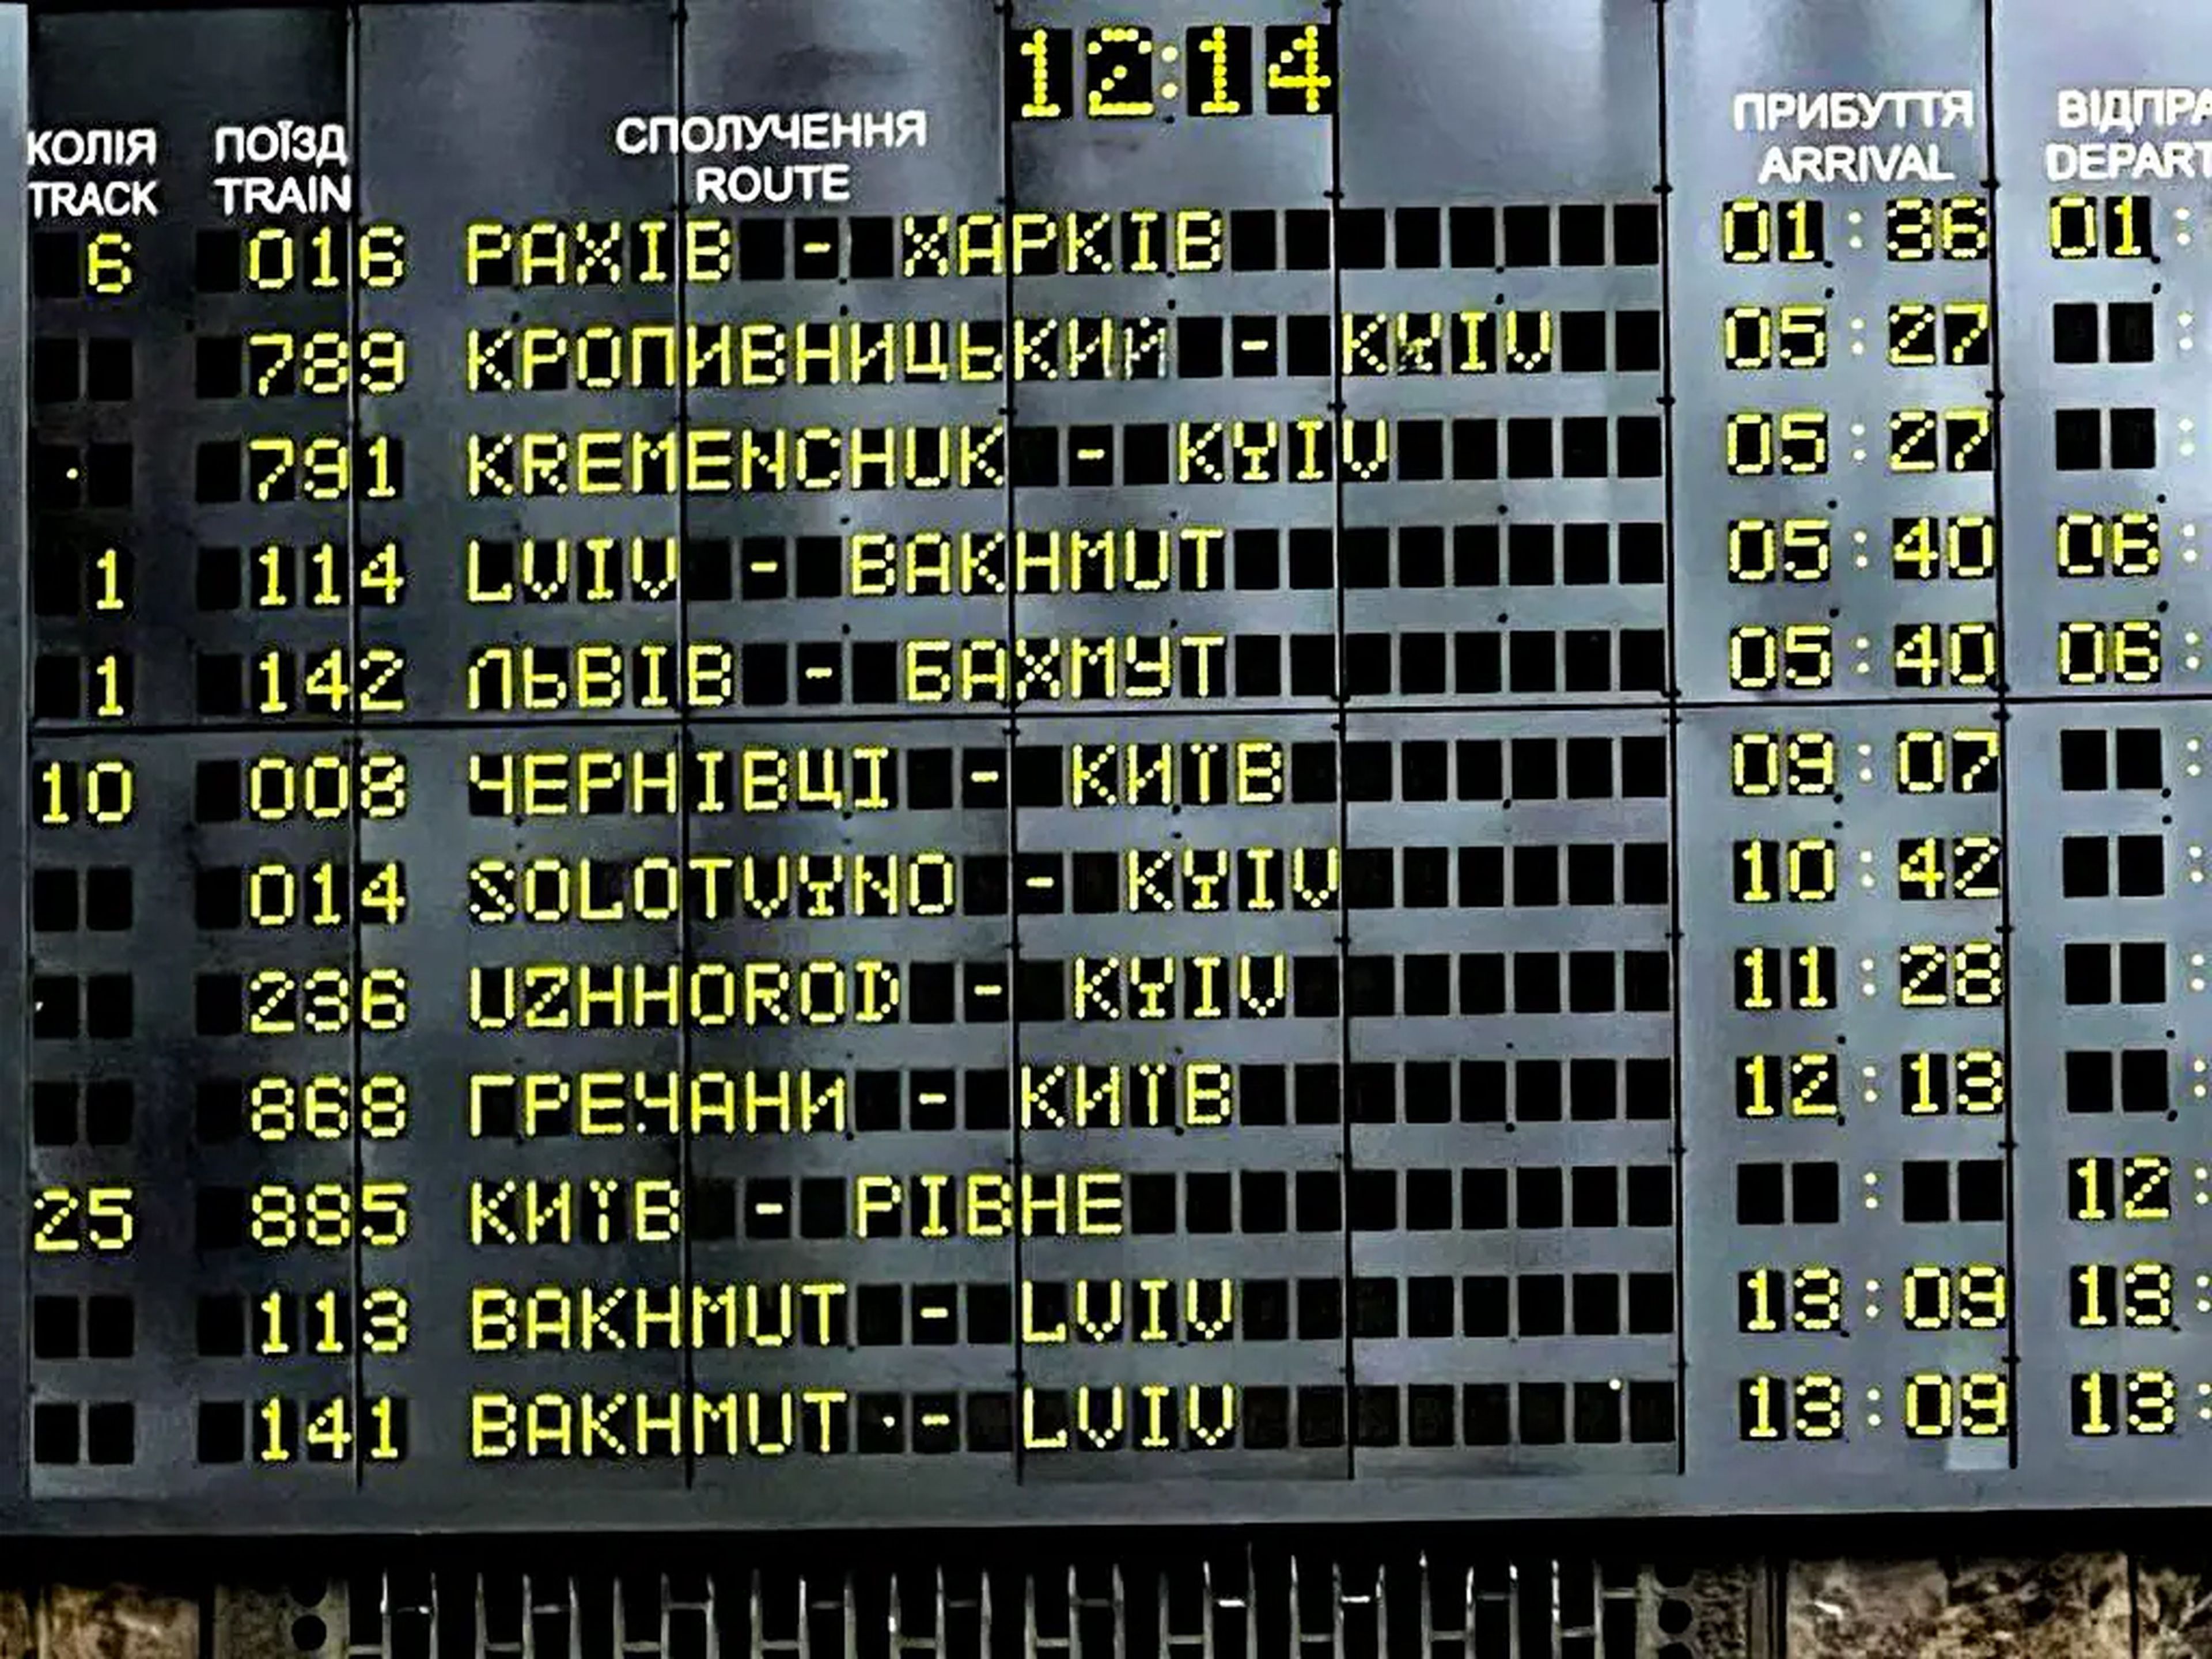 Los horarios de los trenes de la estación de tren de Kiev el 5 de marzo de 2022.